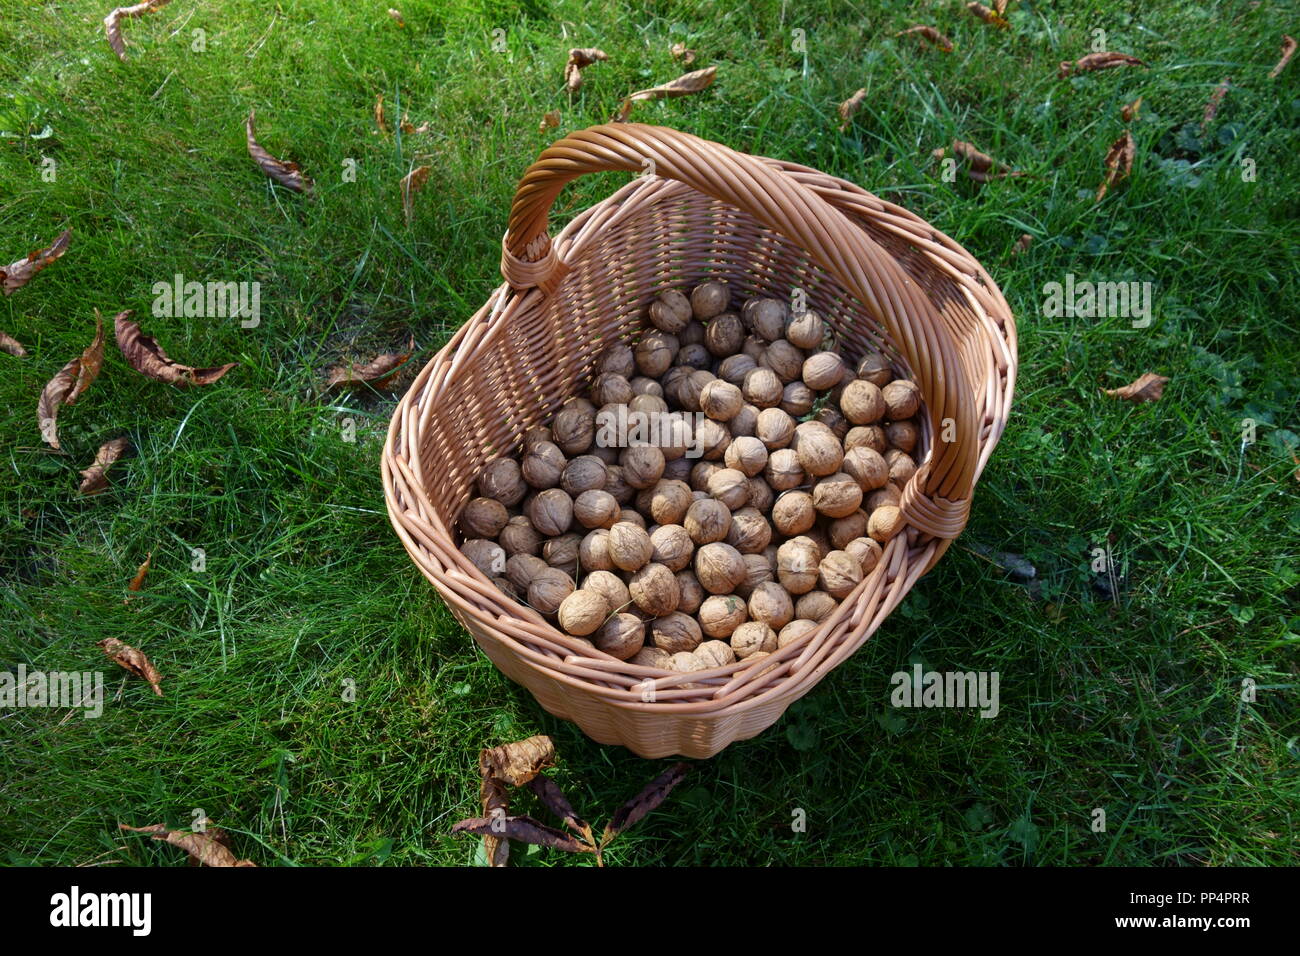 Crop of fresh walnuts in a wicker basket Stock Photo